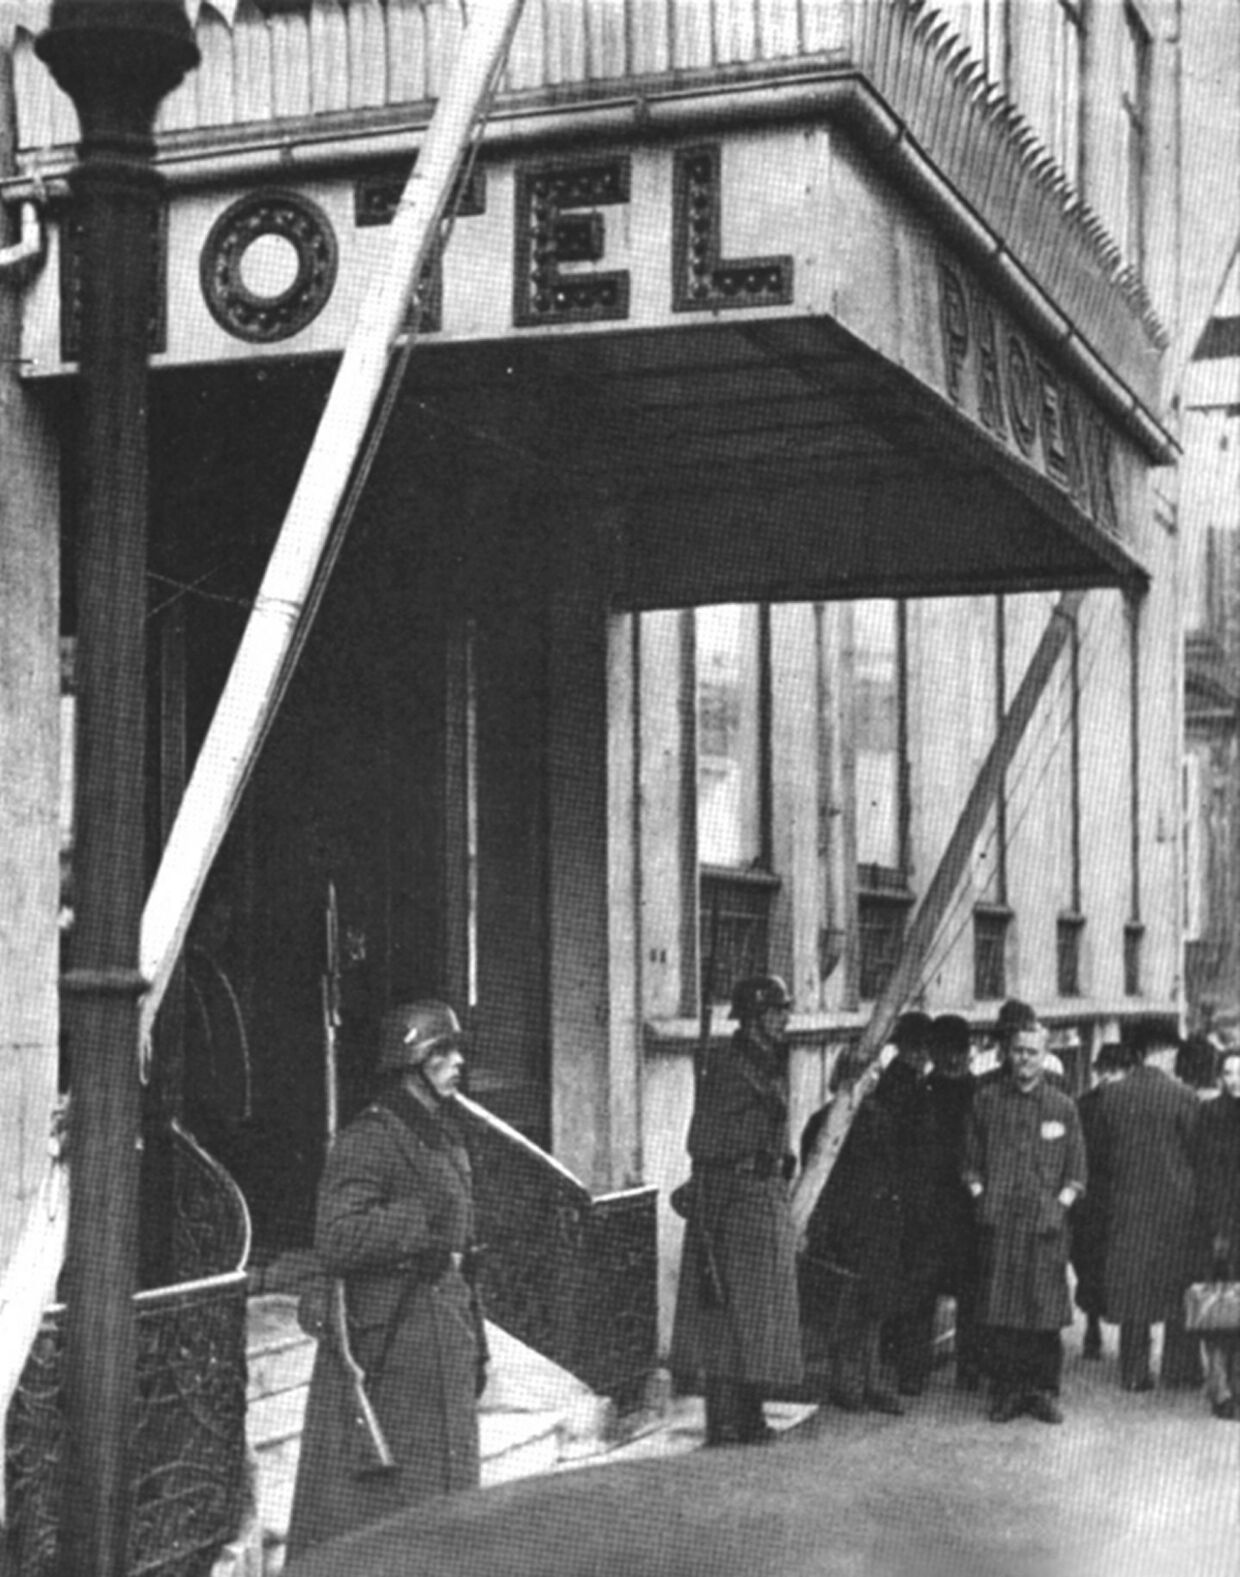 Allerede i 1940 havde Kriegsmarinen beslaglagt Hotel Phoenix i Bredgade. Det var herfra man bl.a. koordinerede bevogtningen af de danske kyster. Det ville være uheldigt, hvis vigtige transporter over Øresund blev opdaget. Kan man forestille sig, at Mogensens transportorganisation Lysglimt kunne lave særaftaler med tyskerne?